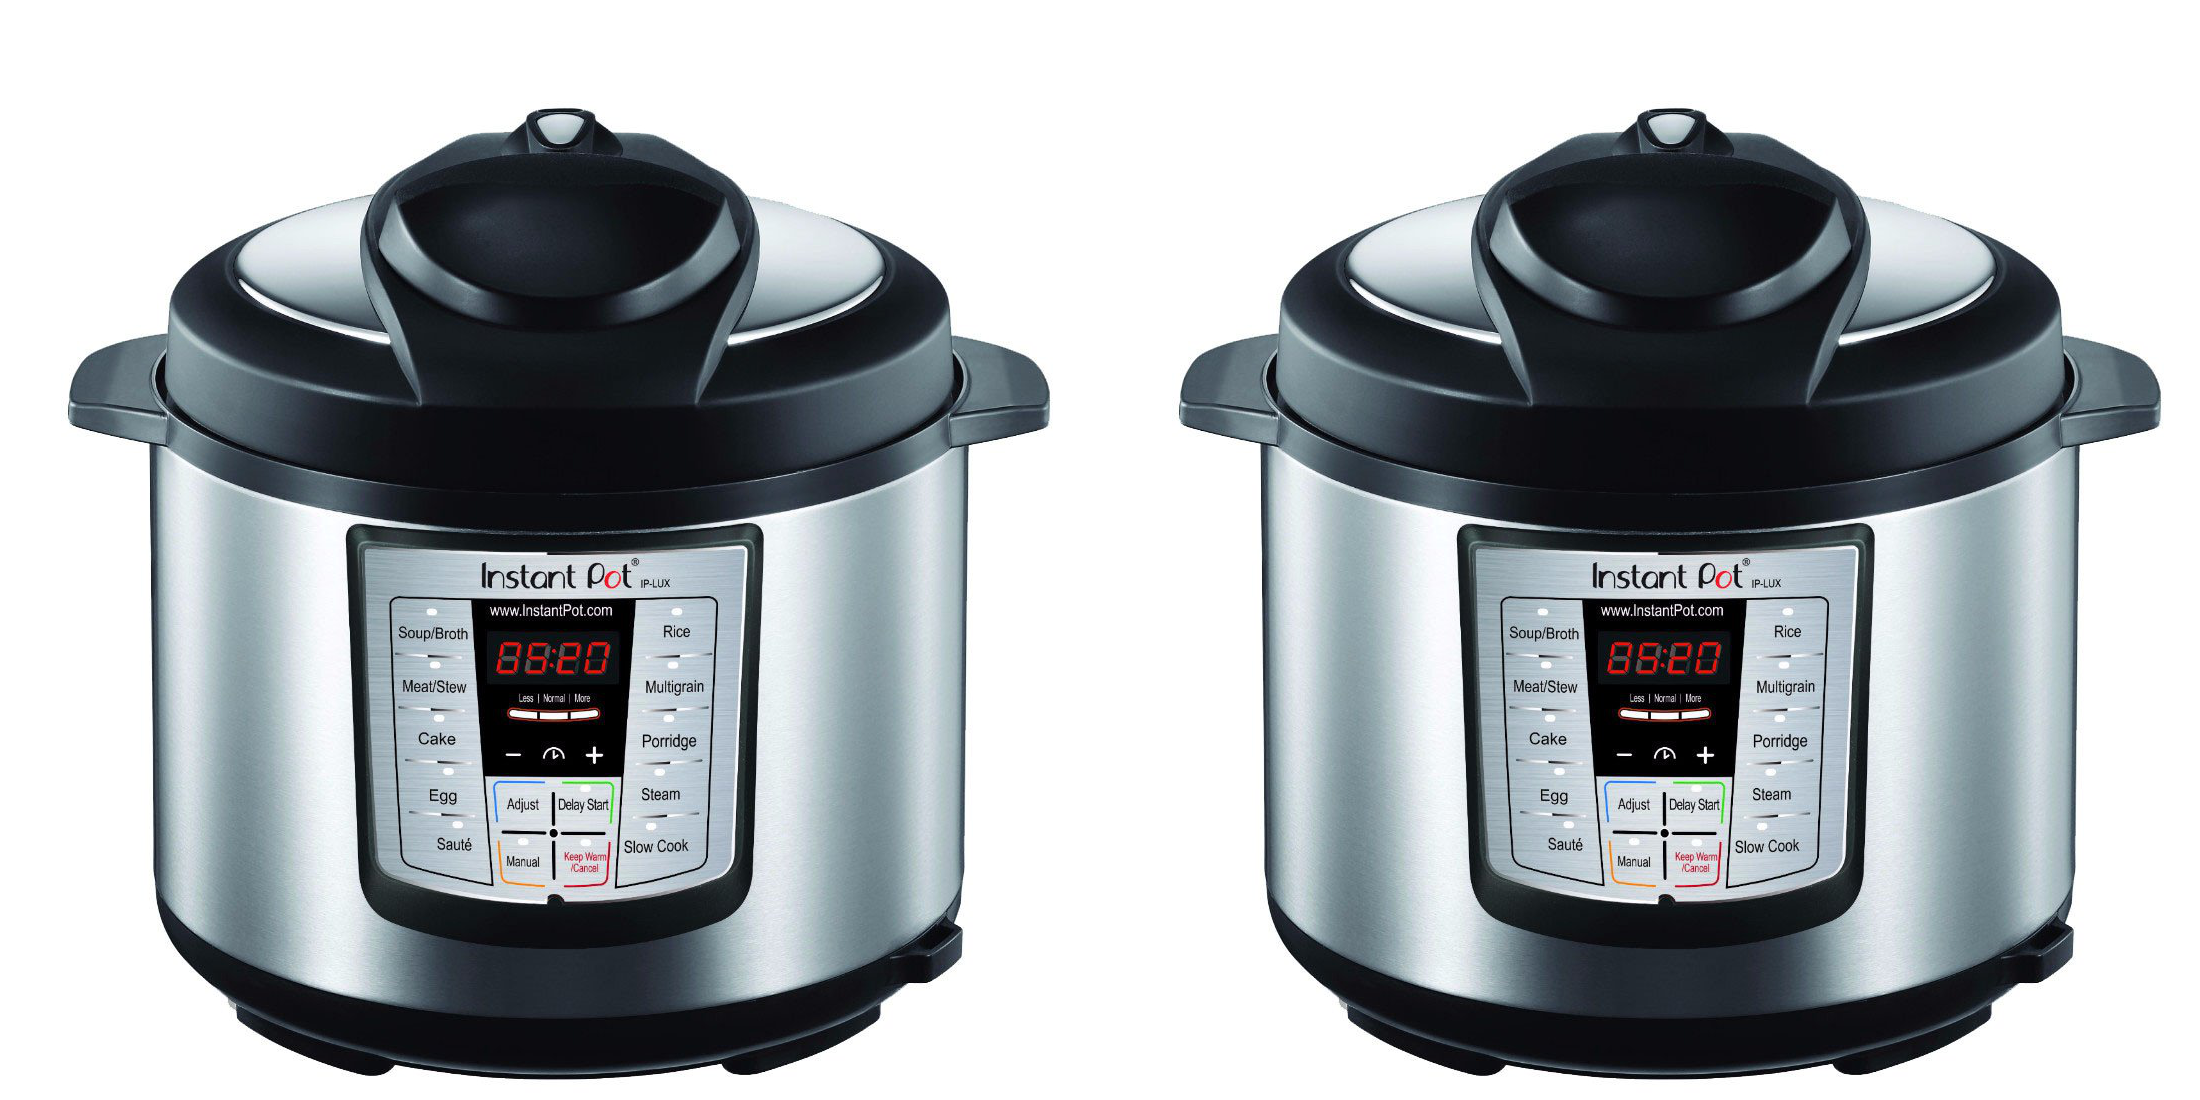 Instant Pot Duo Mini 3 Qt 7-in-1 Pressure Cooker $49